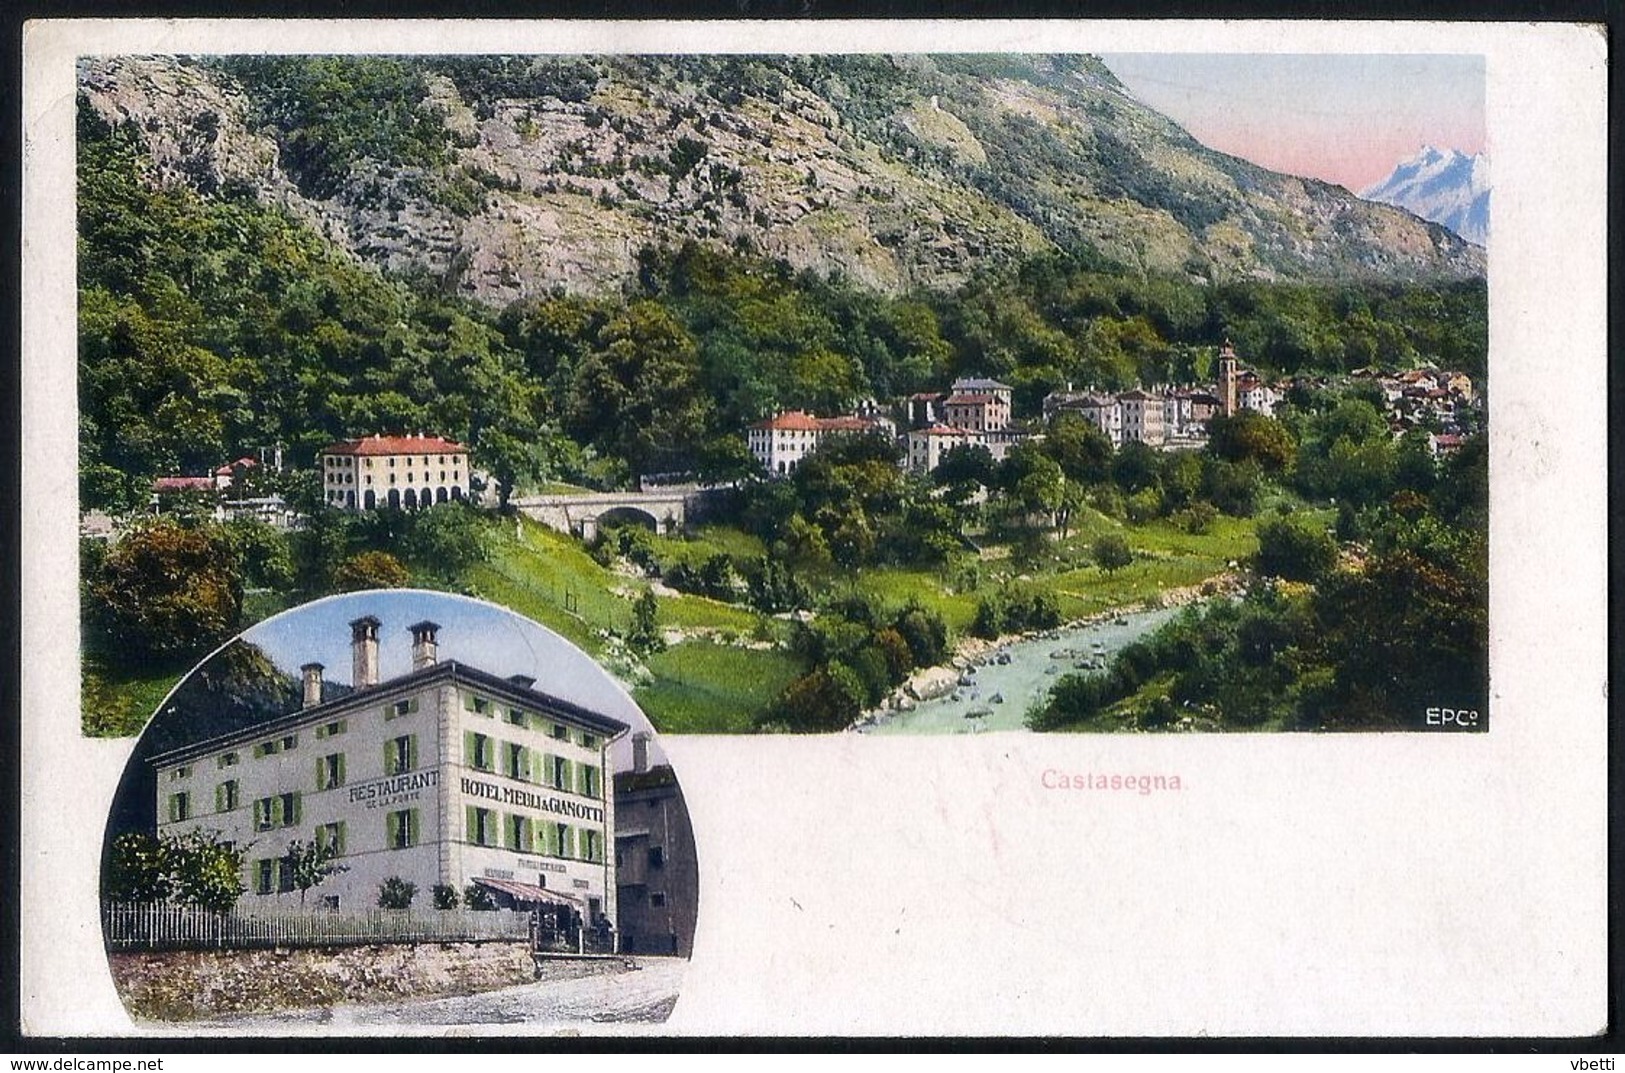 Switzerland - Graubünden Canton: Castasegna, Panorama  1927 - St. Anton